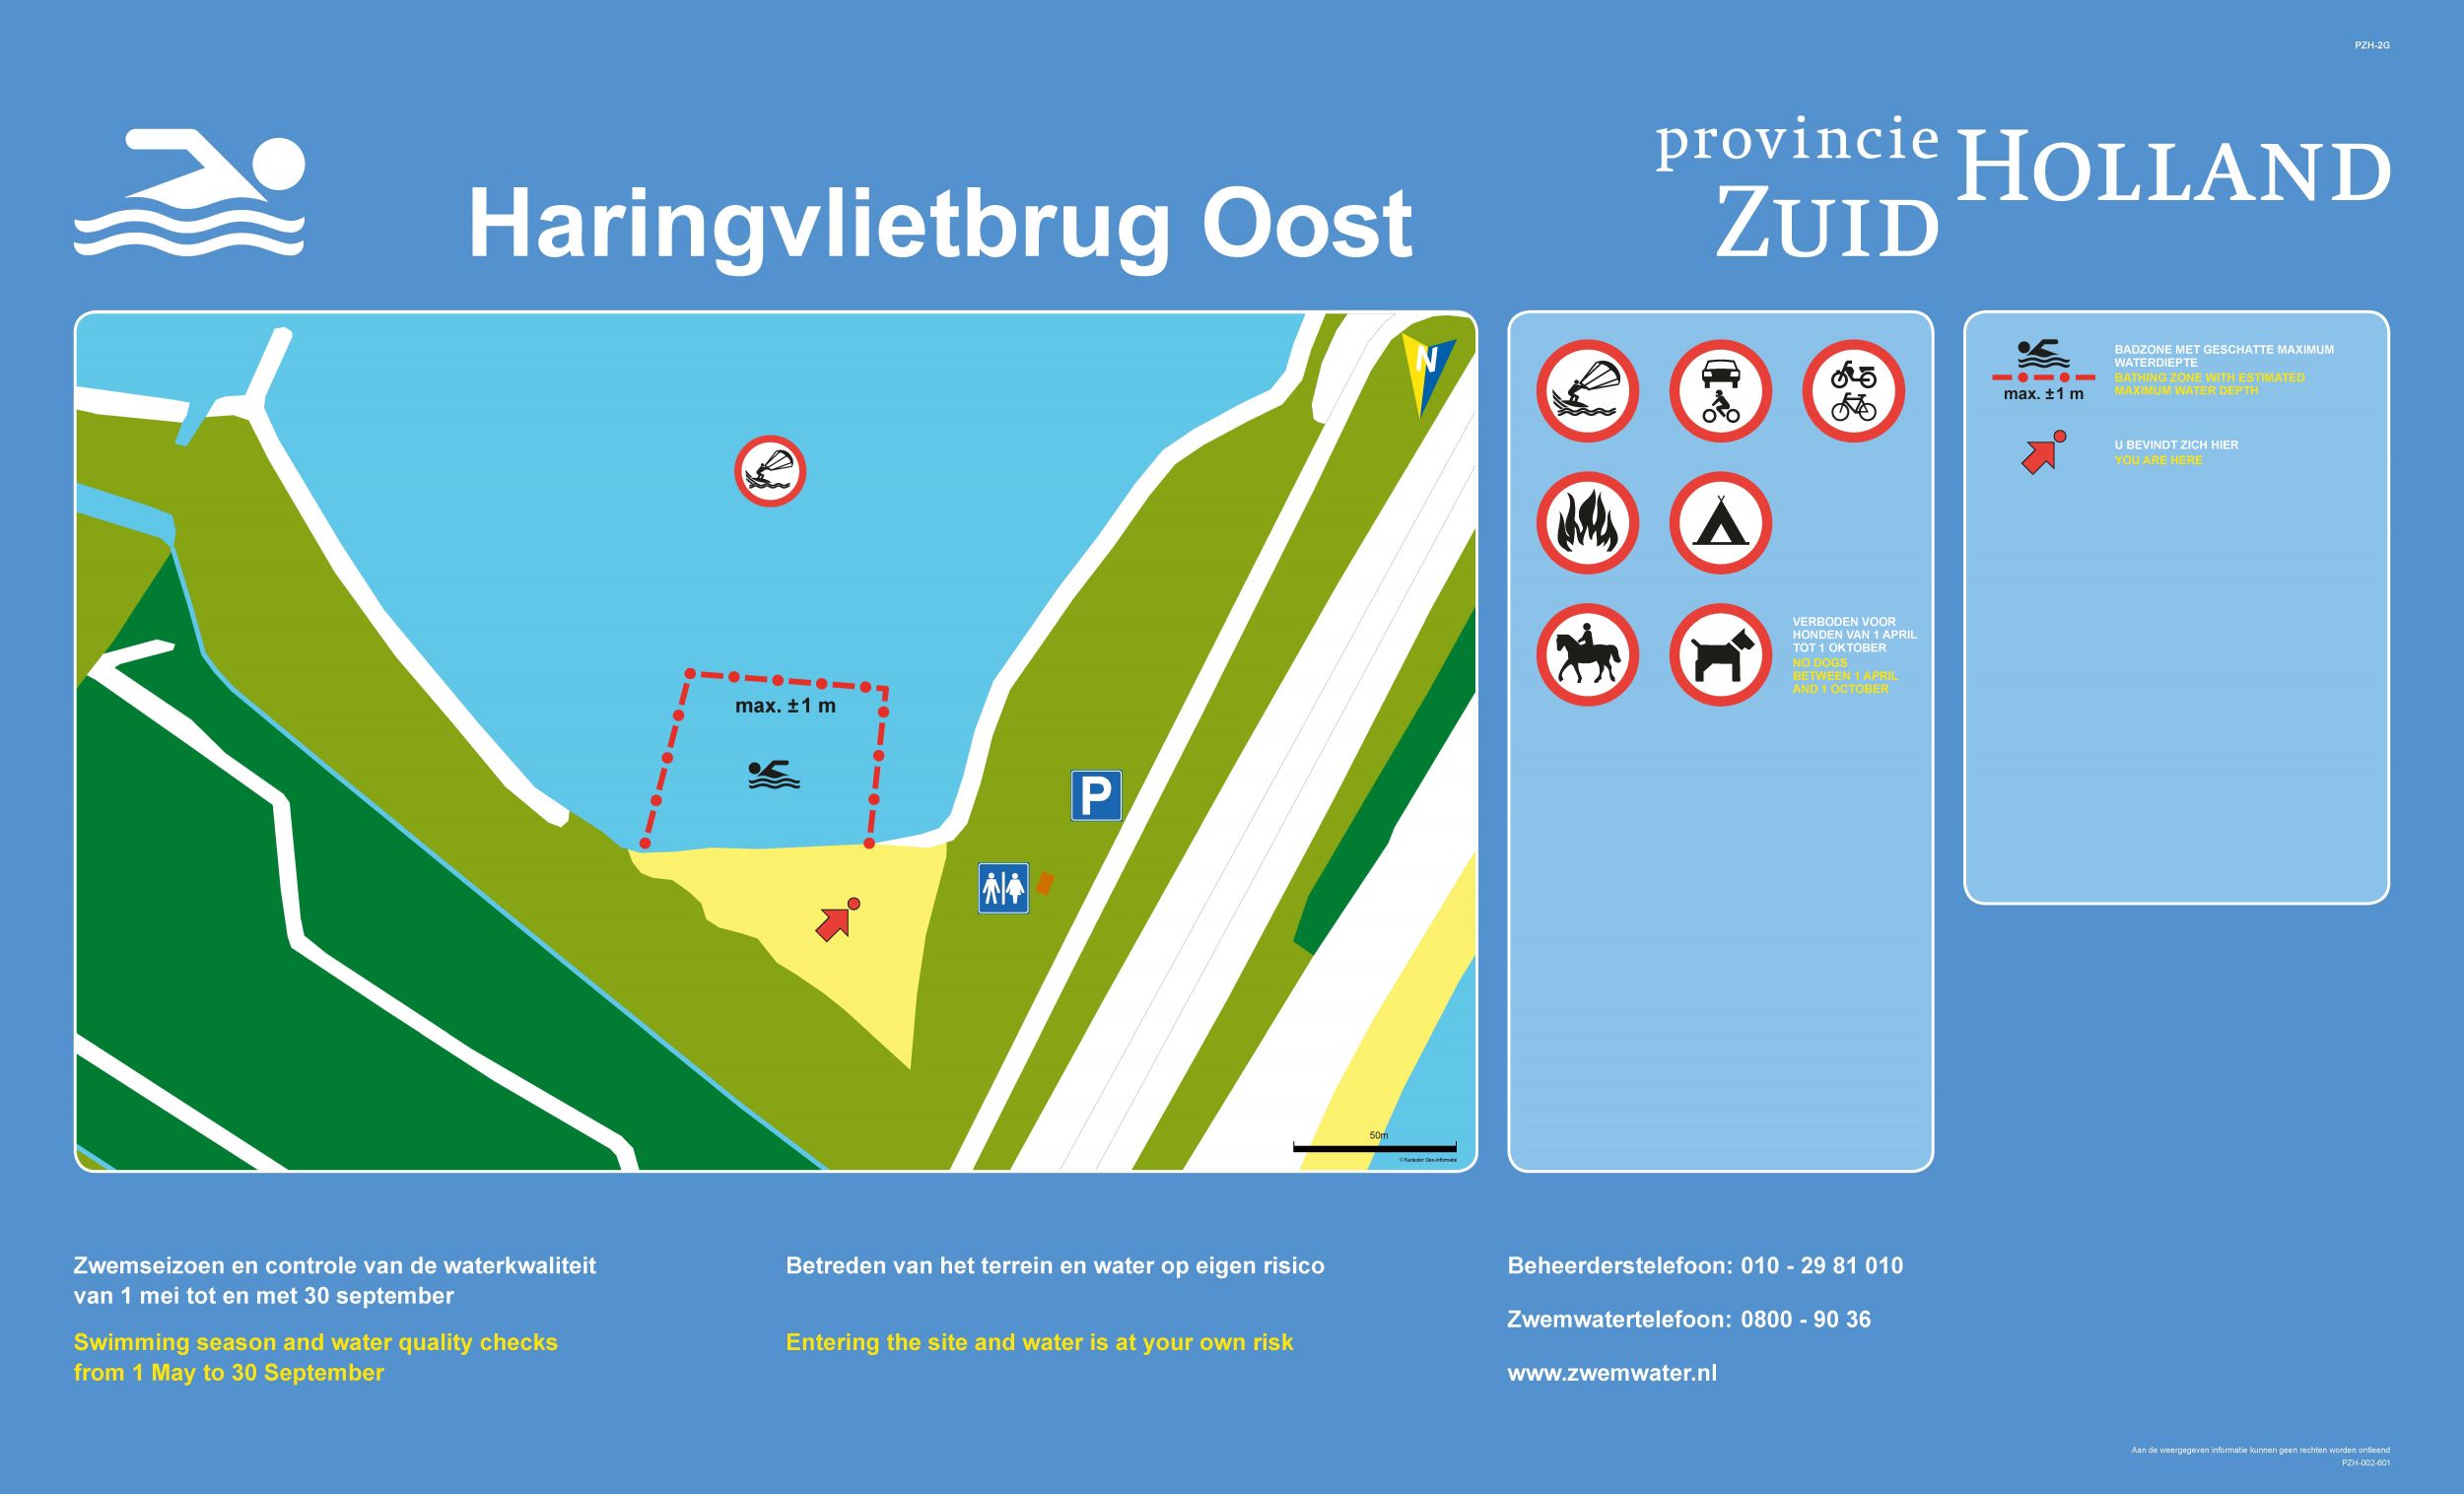 Het informatiebord bij zwemlocatie Haringvlietbrug Oost